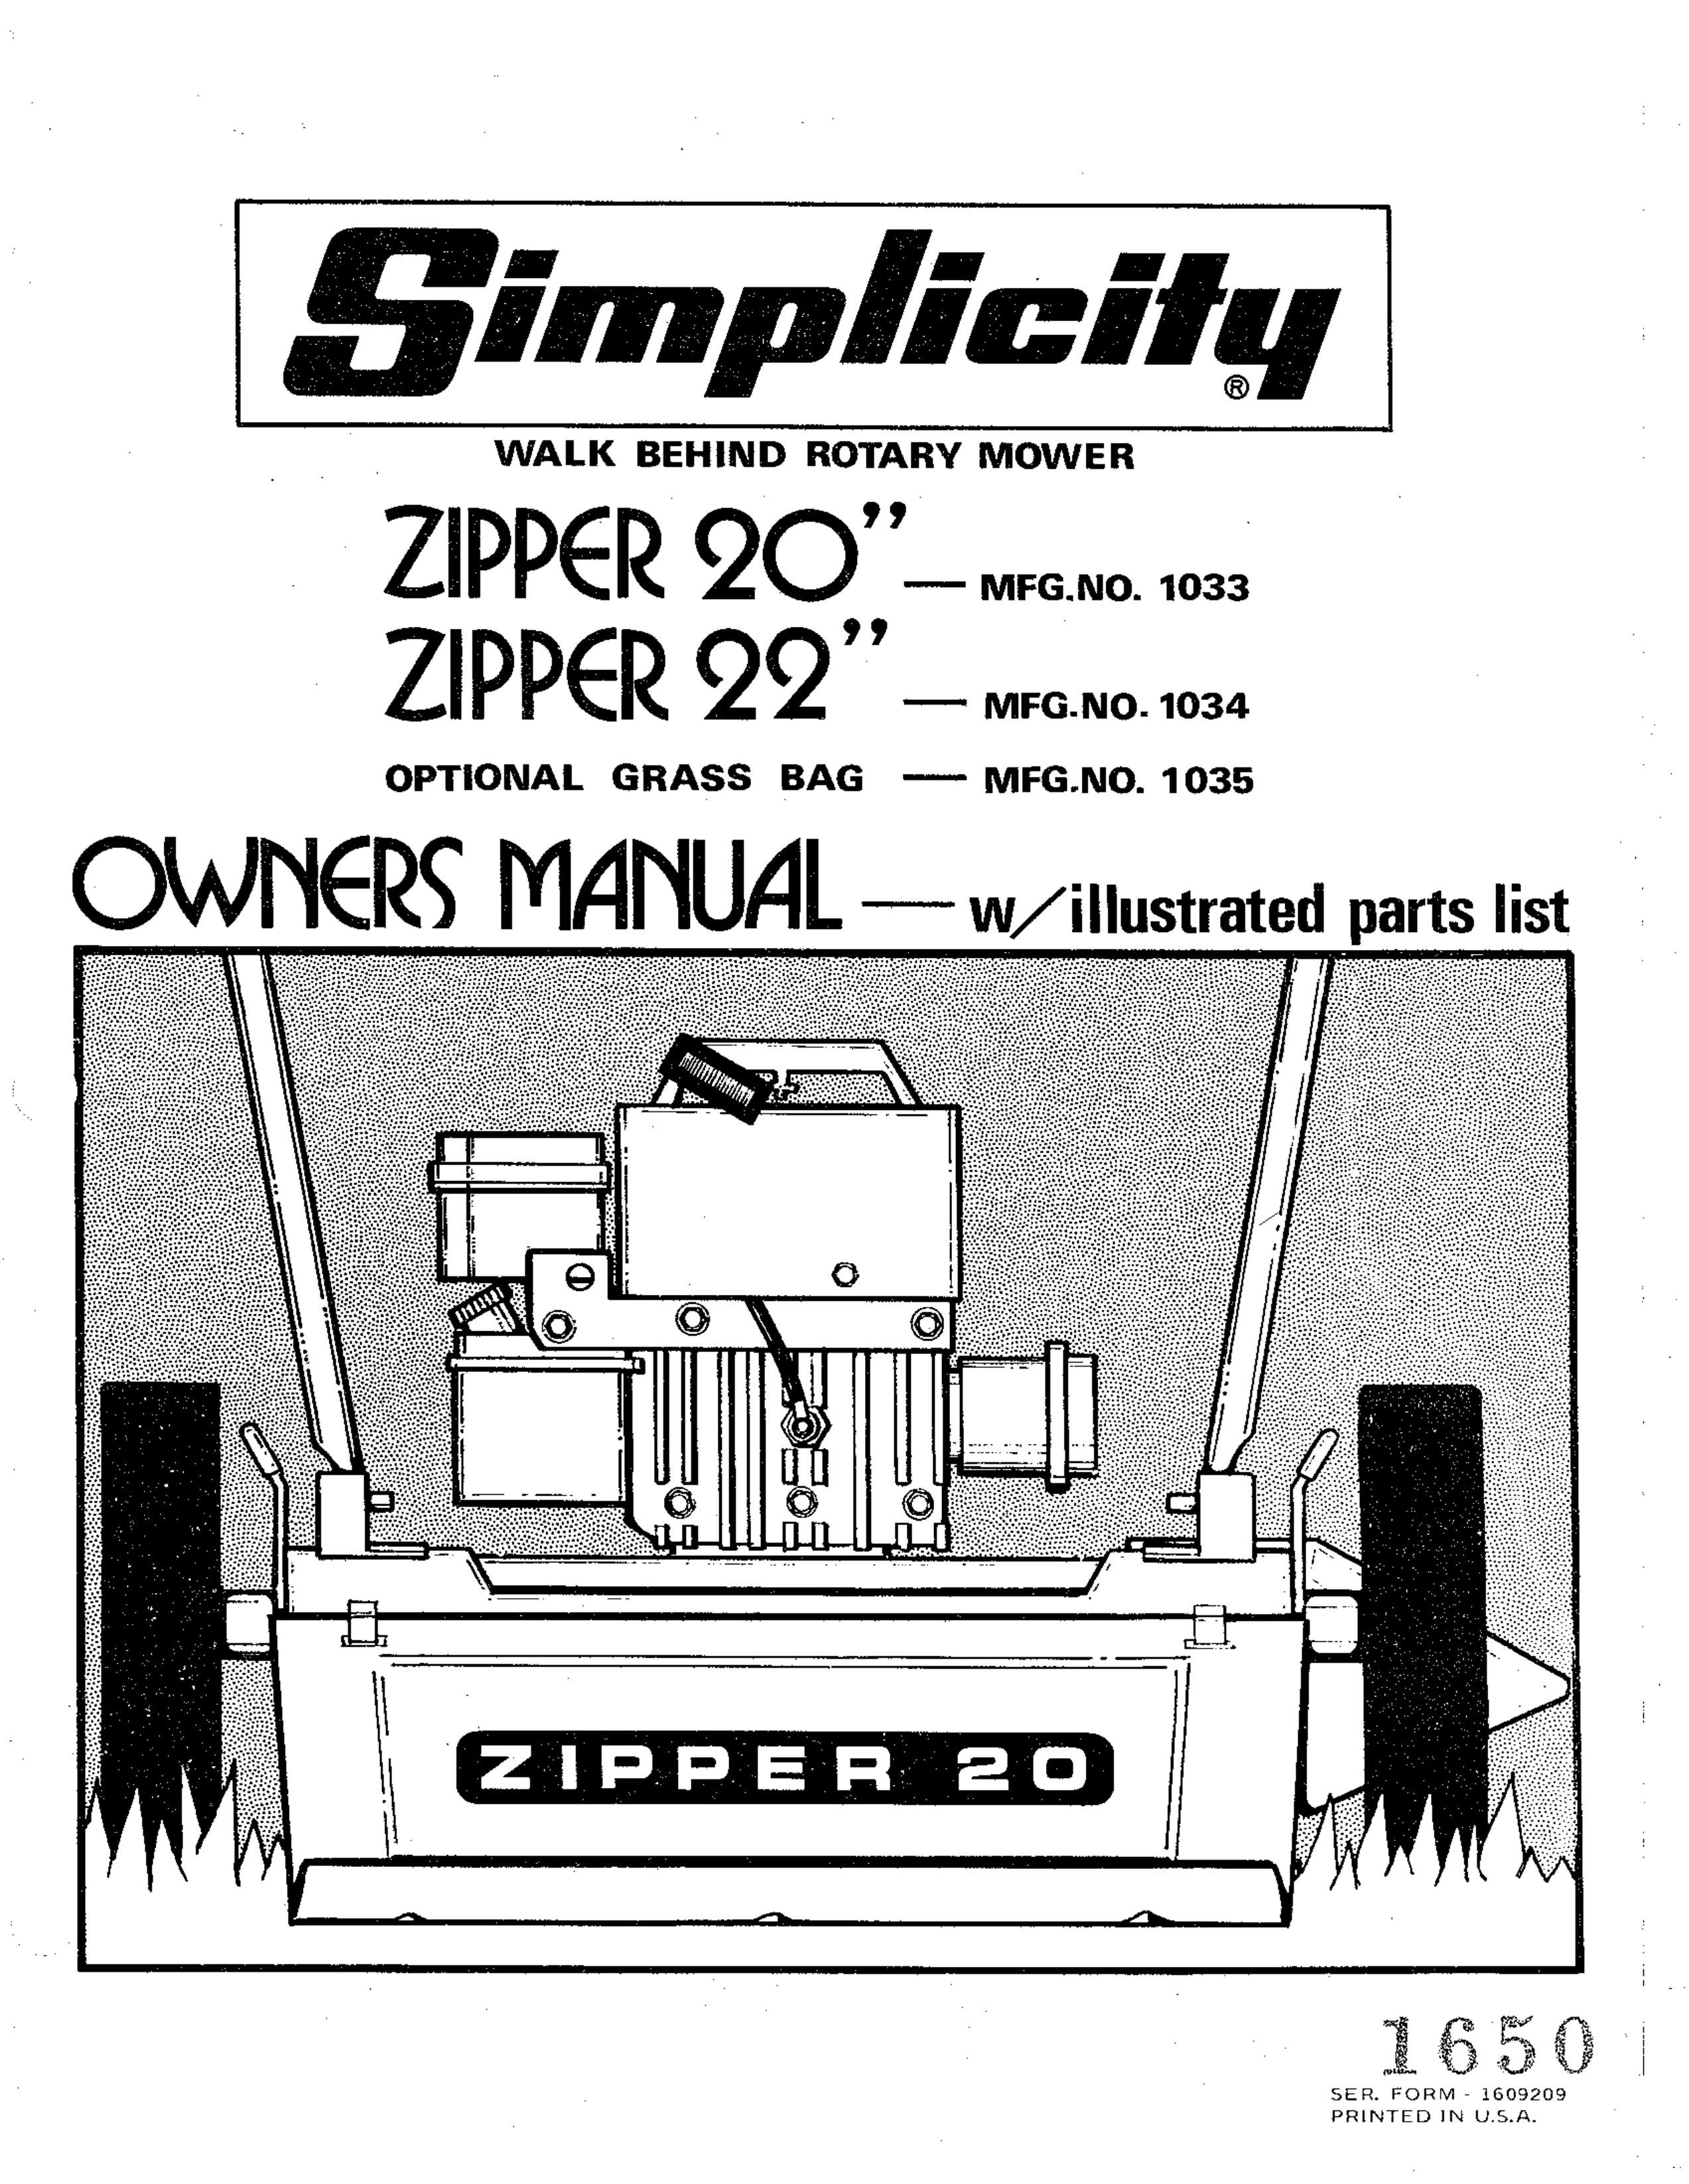 Simplicity 1034 Lawn Mower User Manual